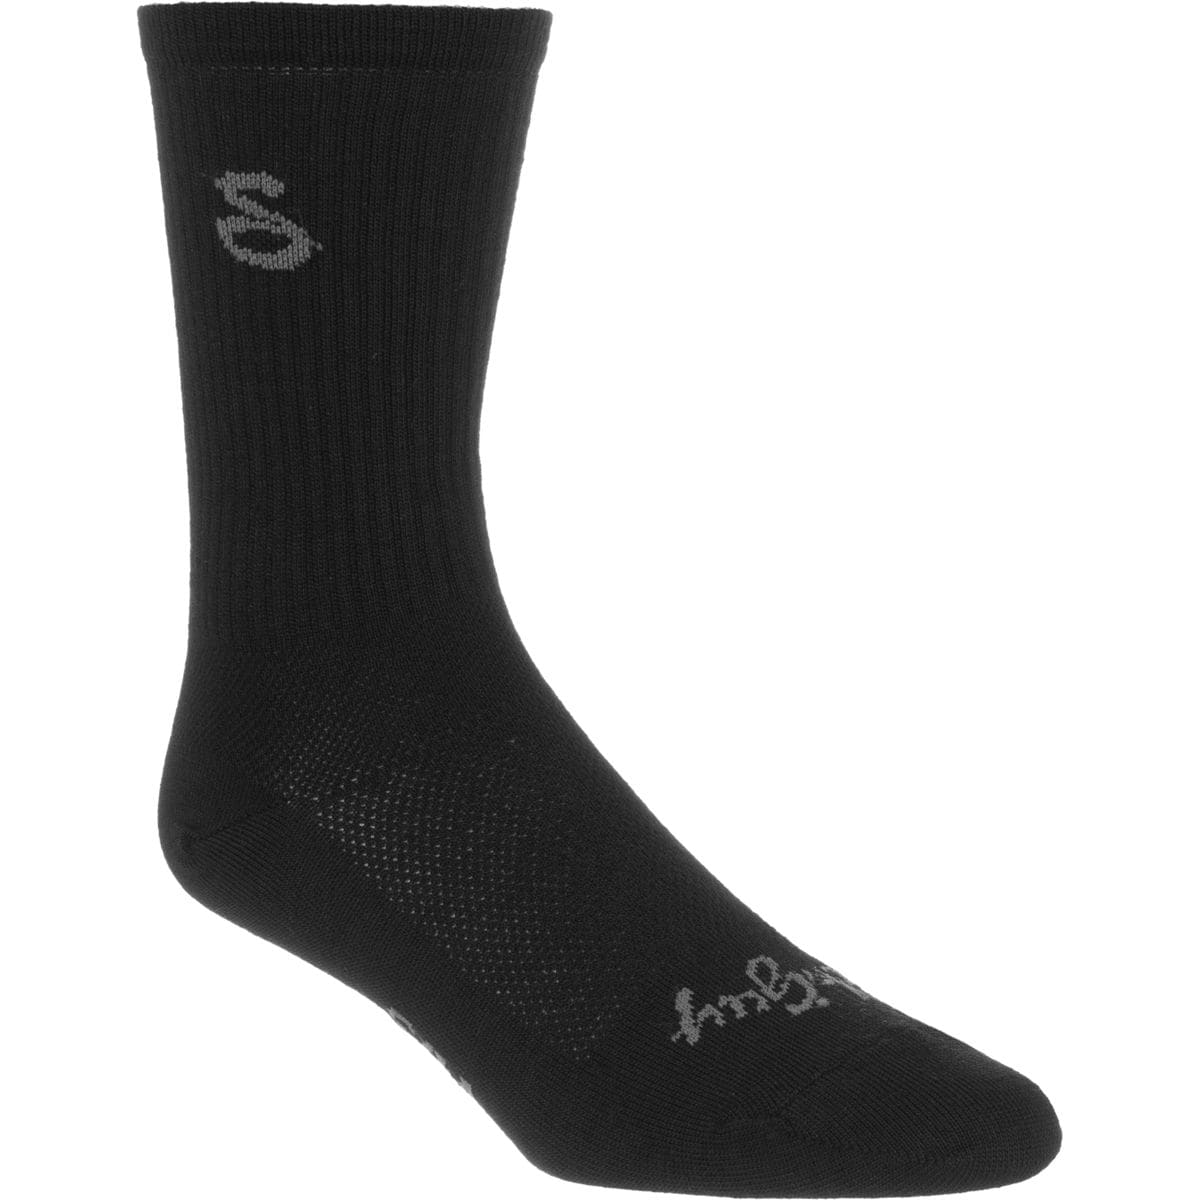 SockGuy Tall Black 6in Wool Socks Men's